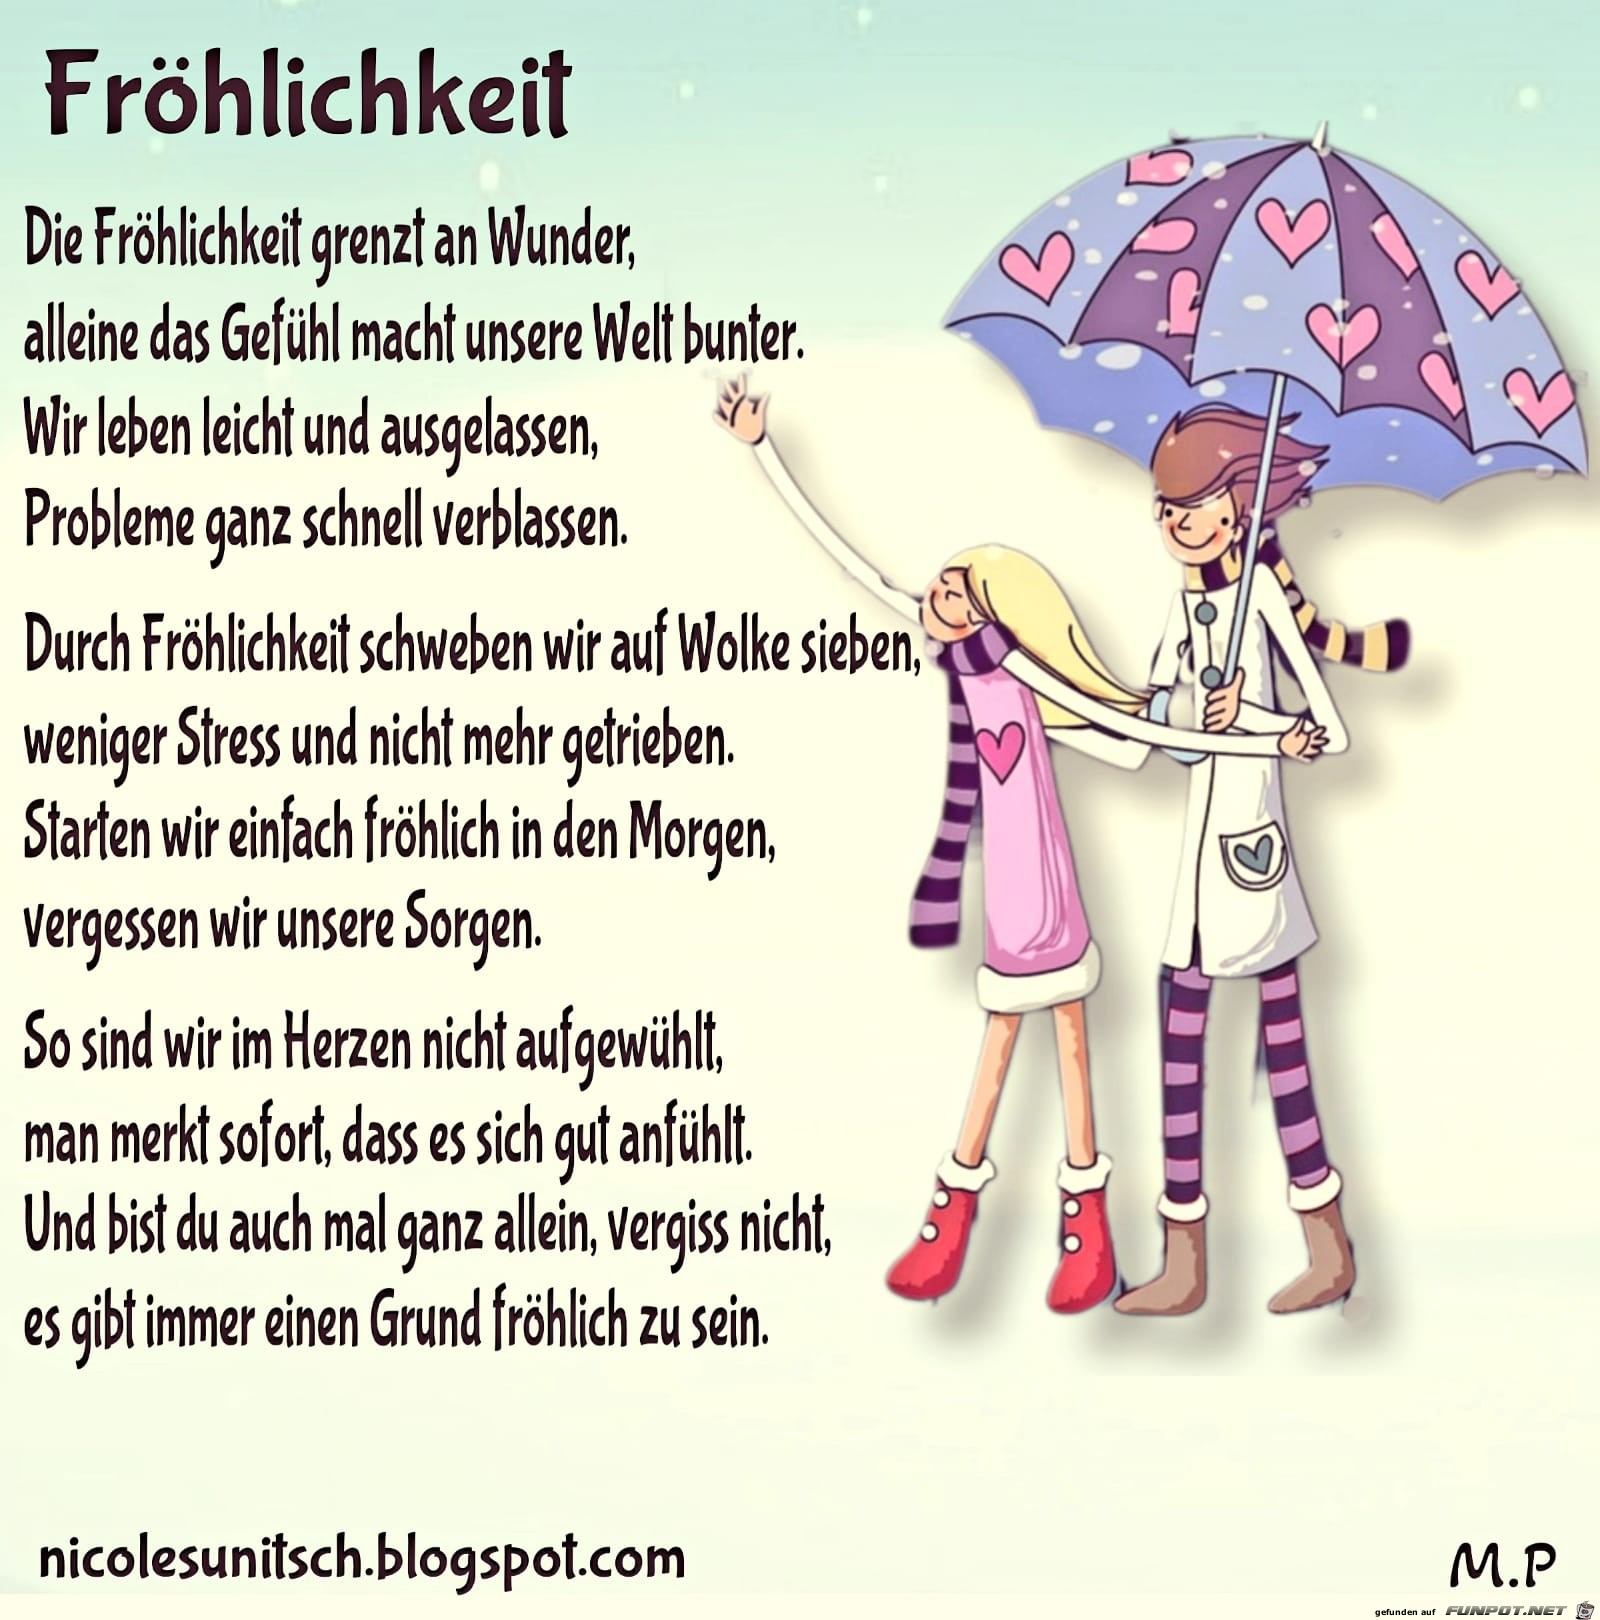 Frhlichkei